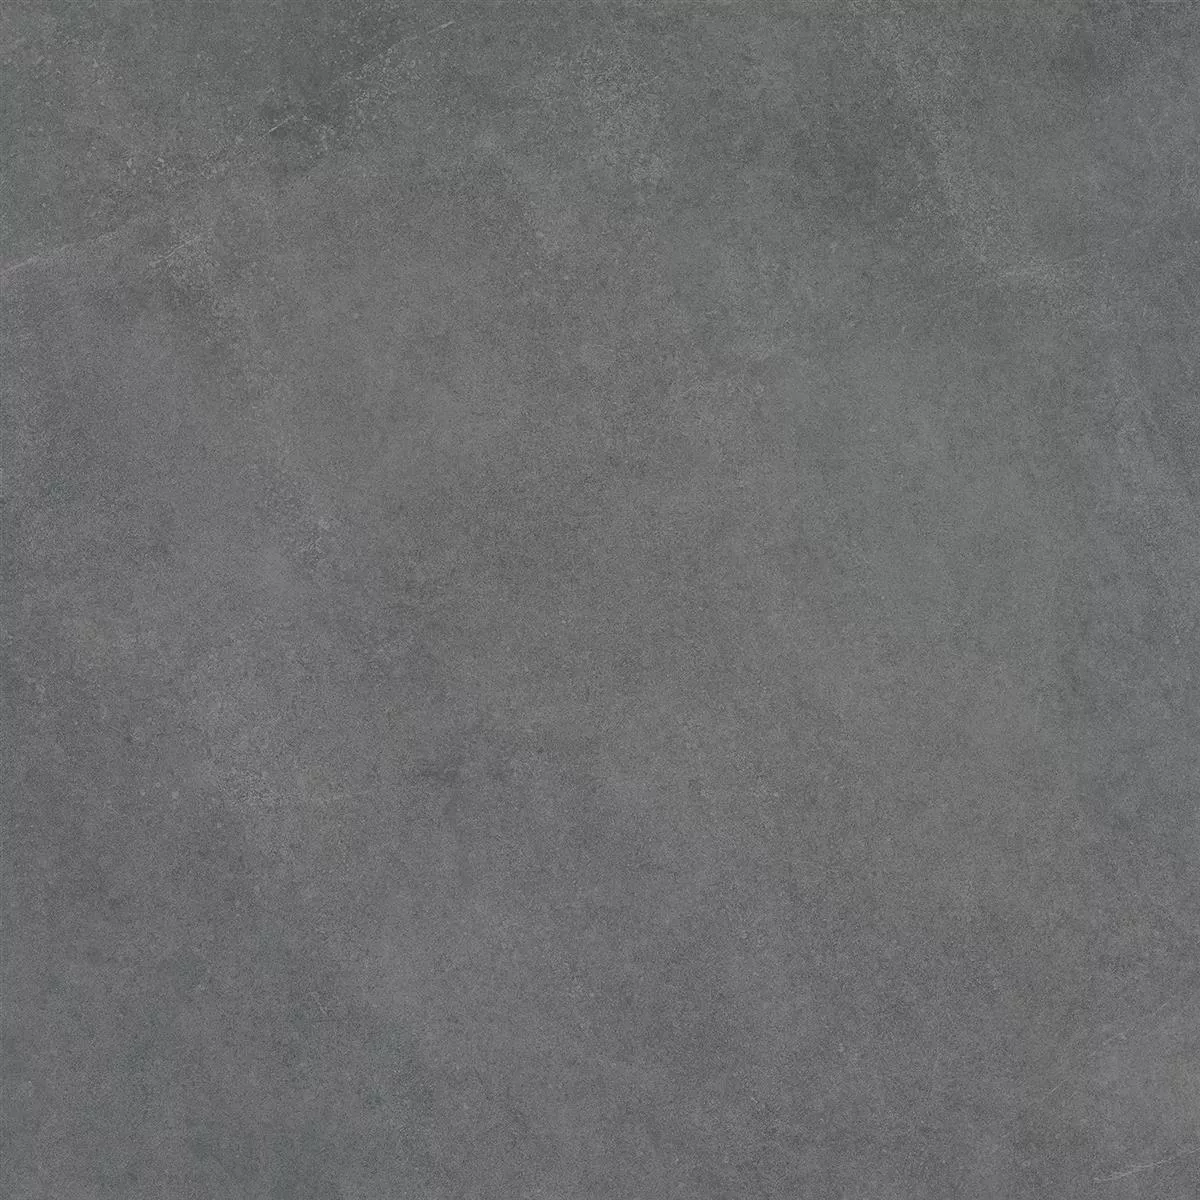 Teraszlapok Cement Megjelenés Glinde Antracit 60x60cm